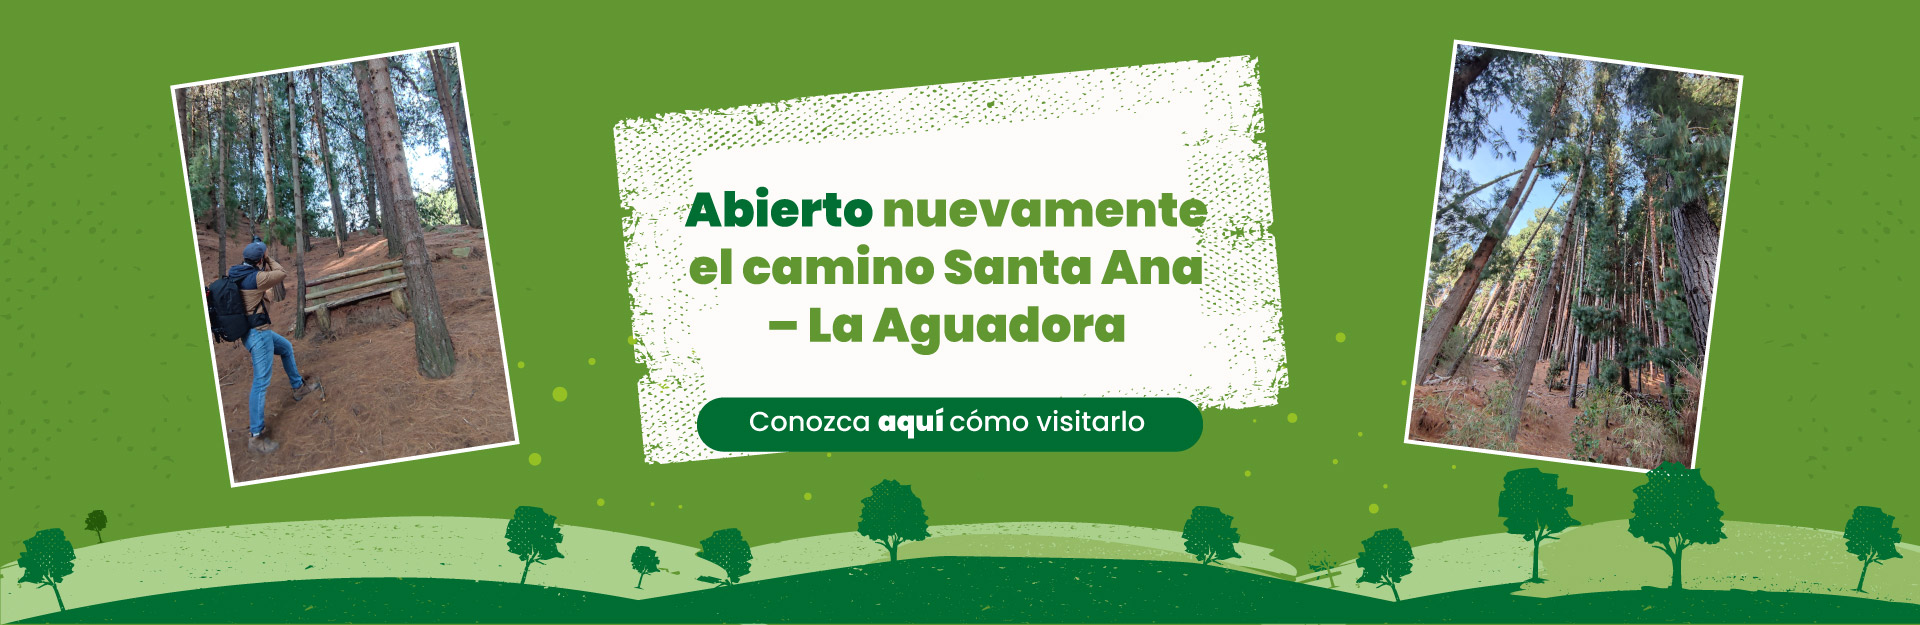 Acueducto de Bogotá abre nuevamente el camino Santa Ana – La Aguadora